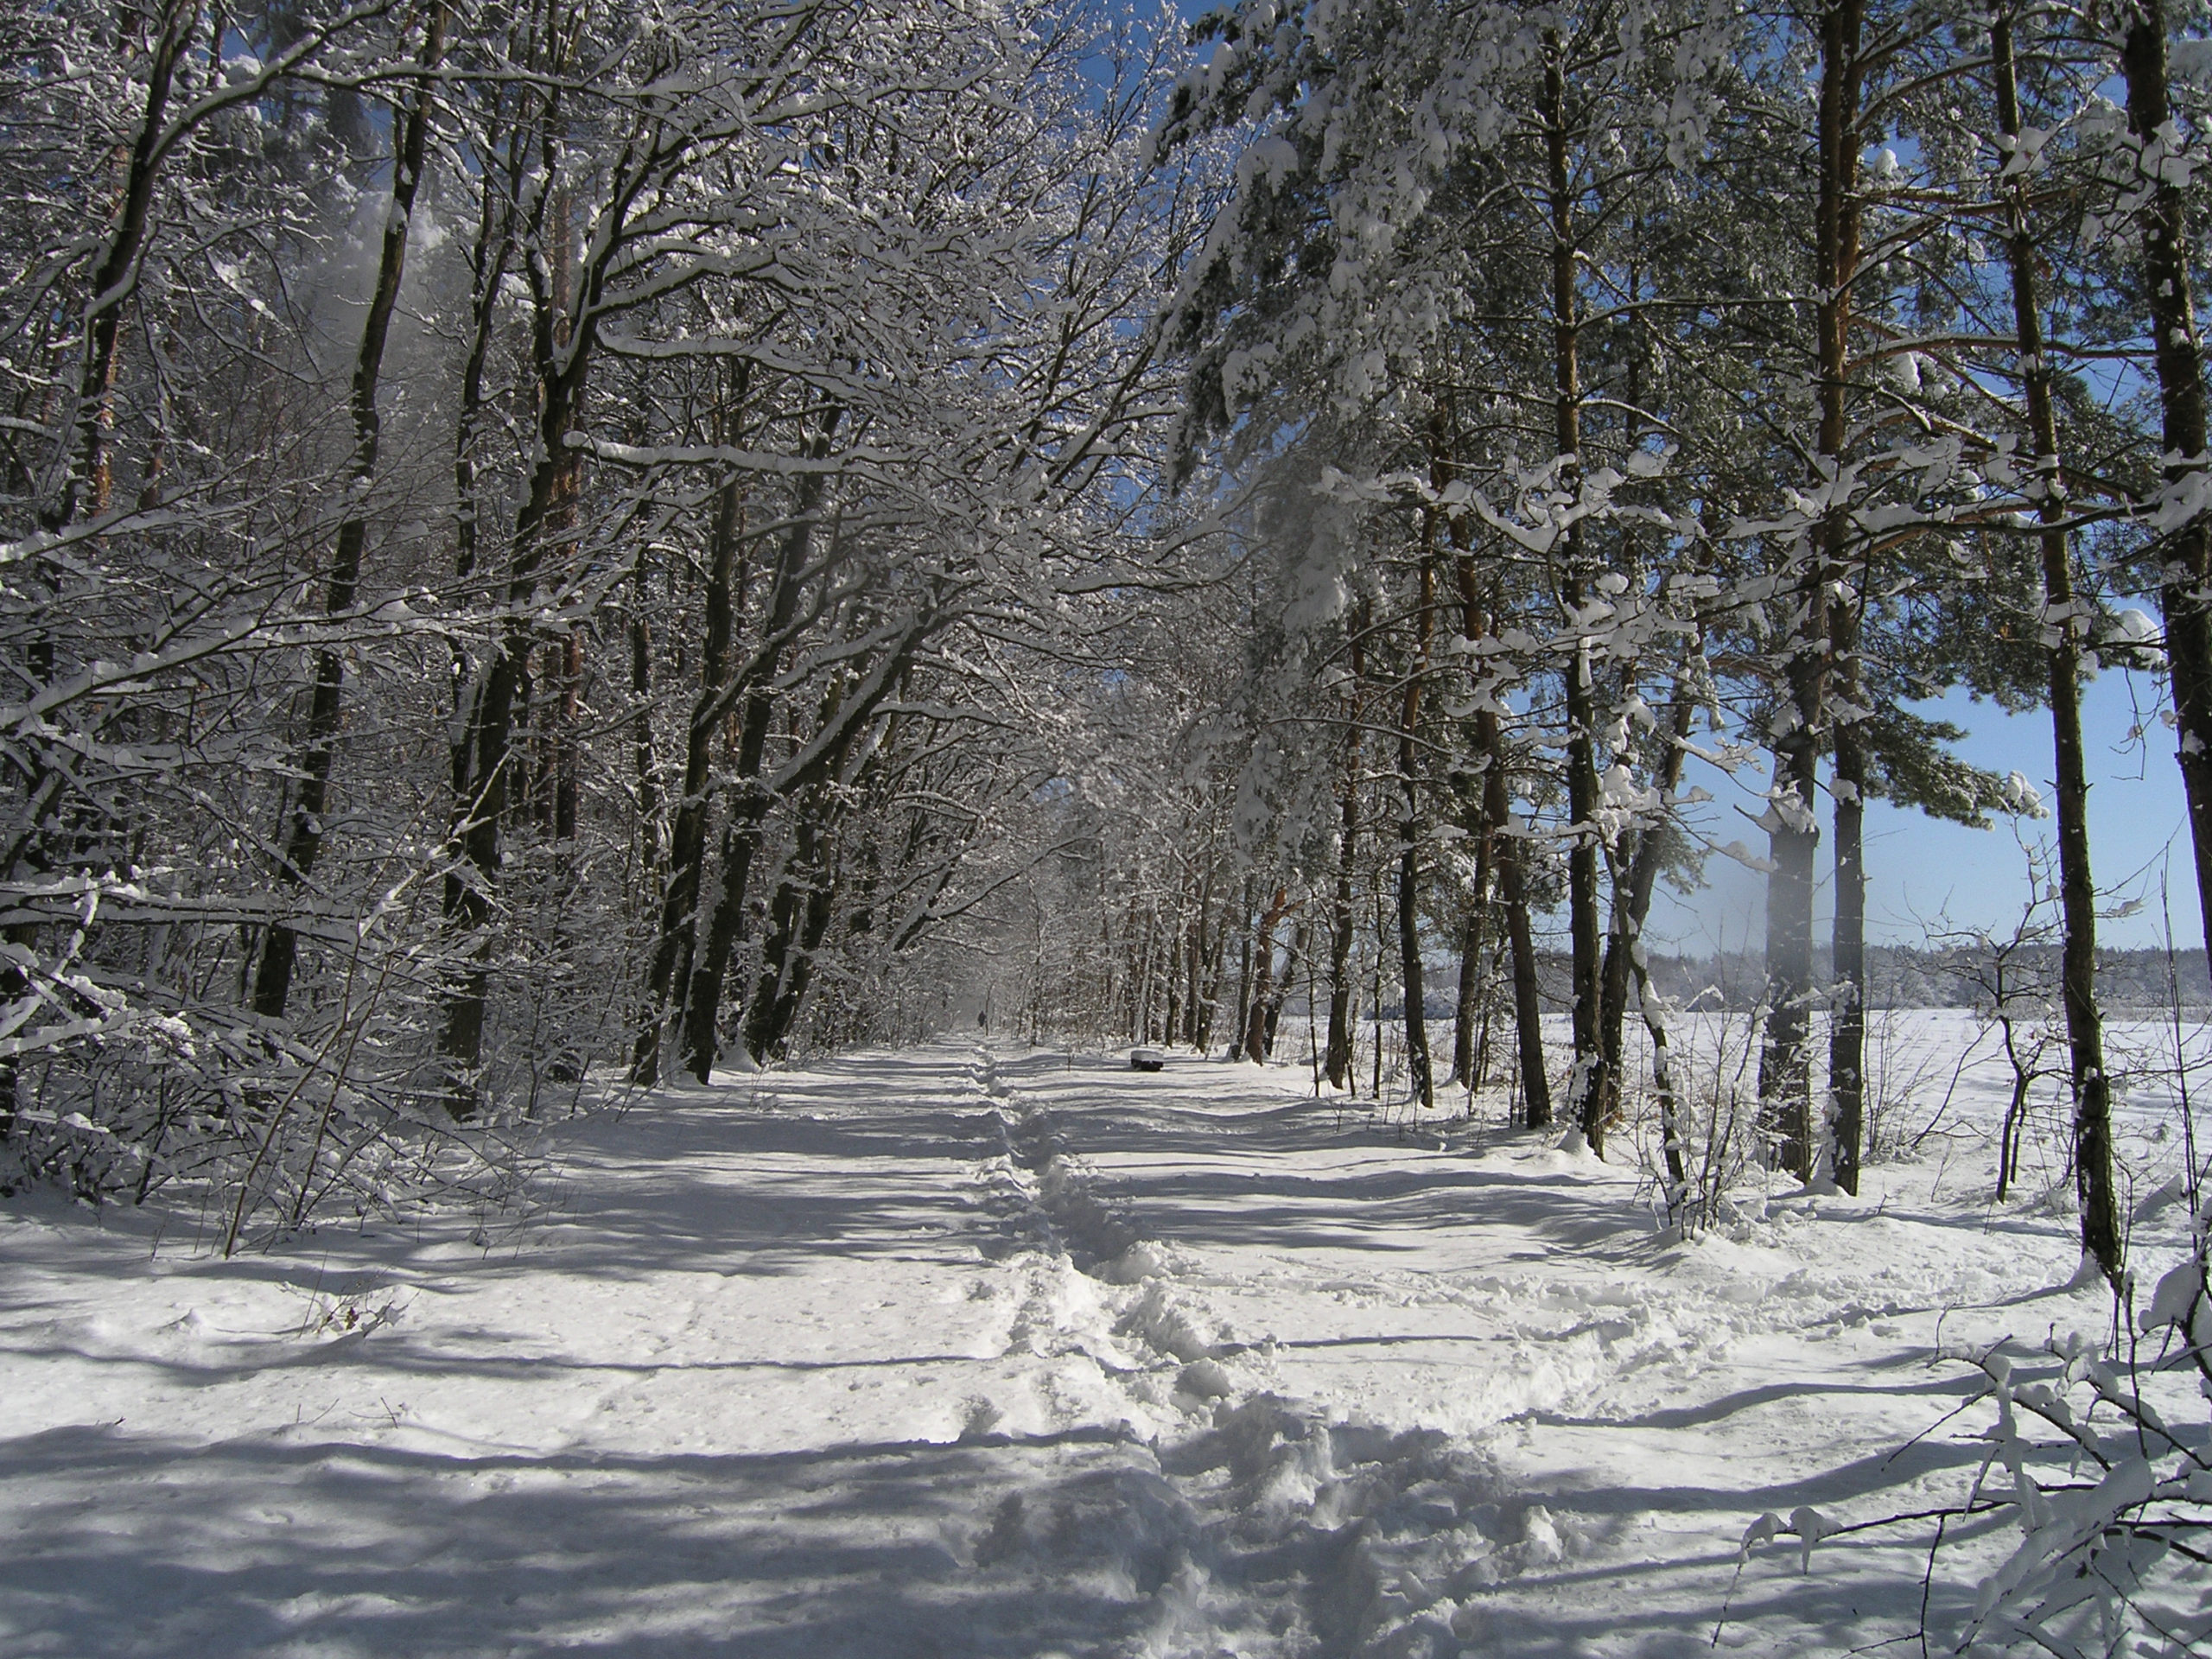 Droga w lesie zimą